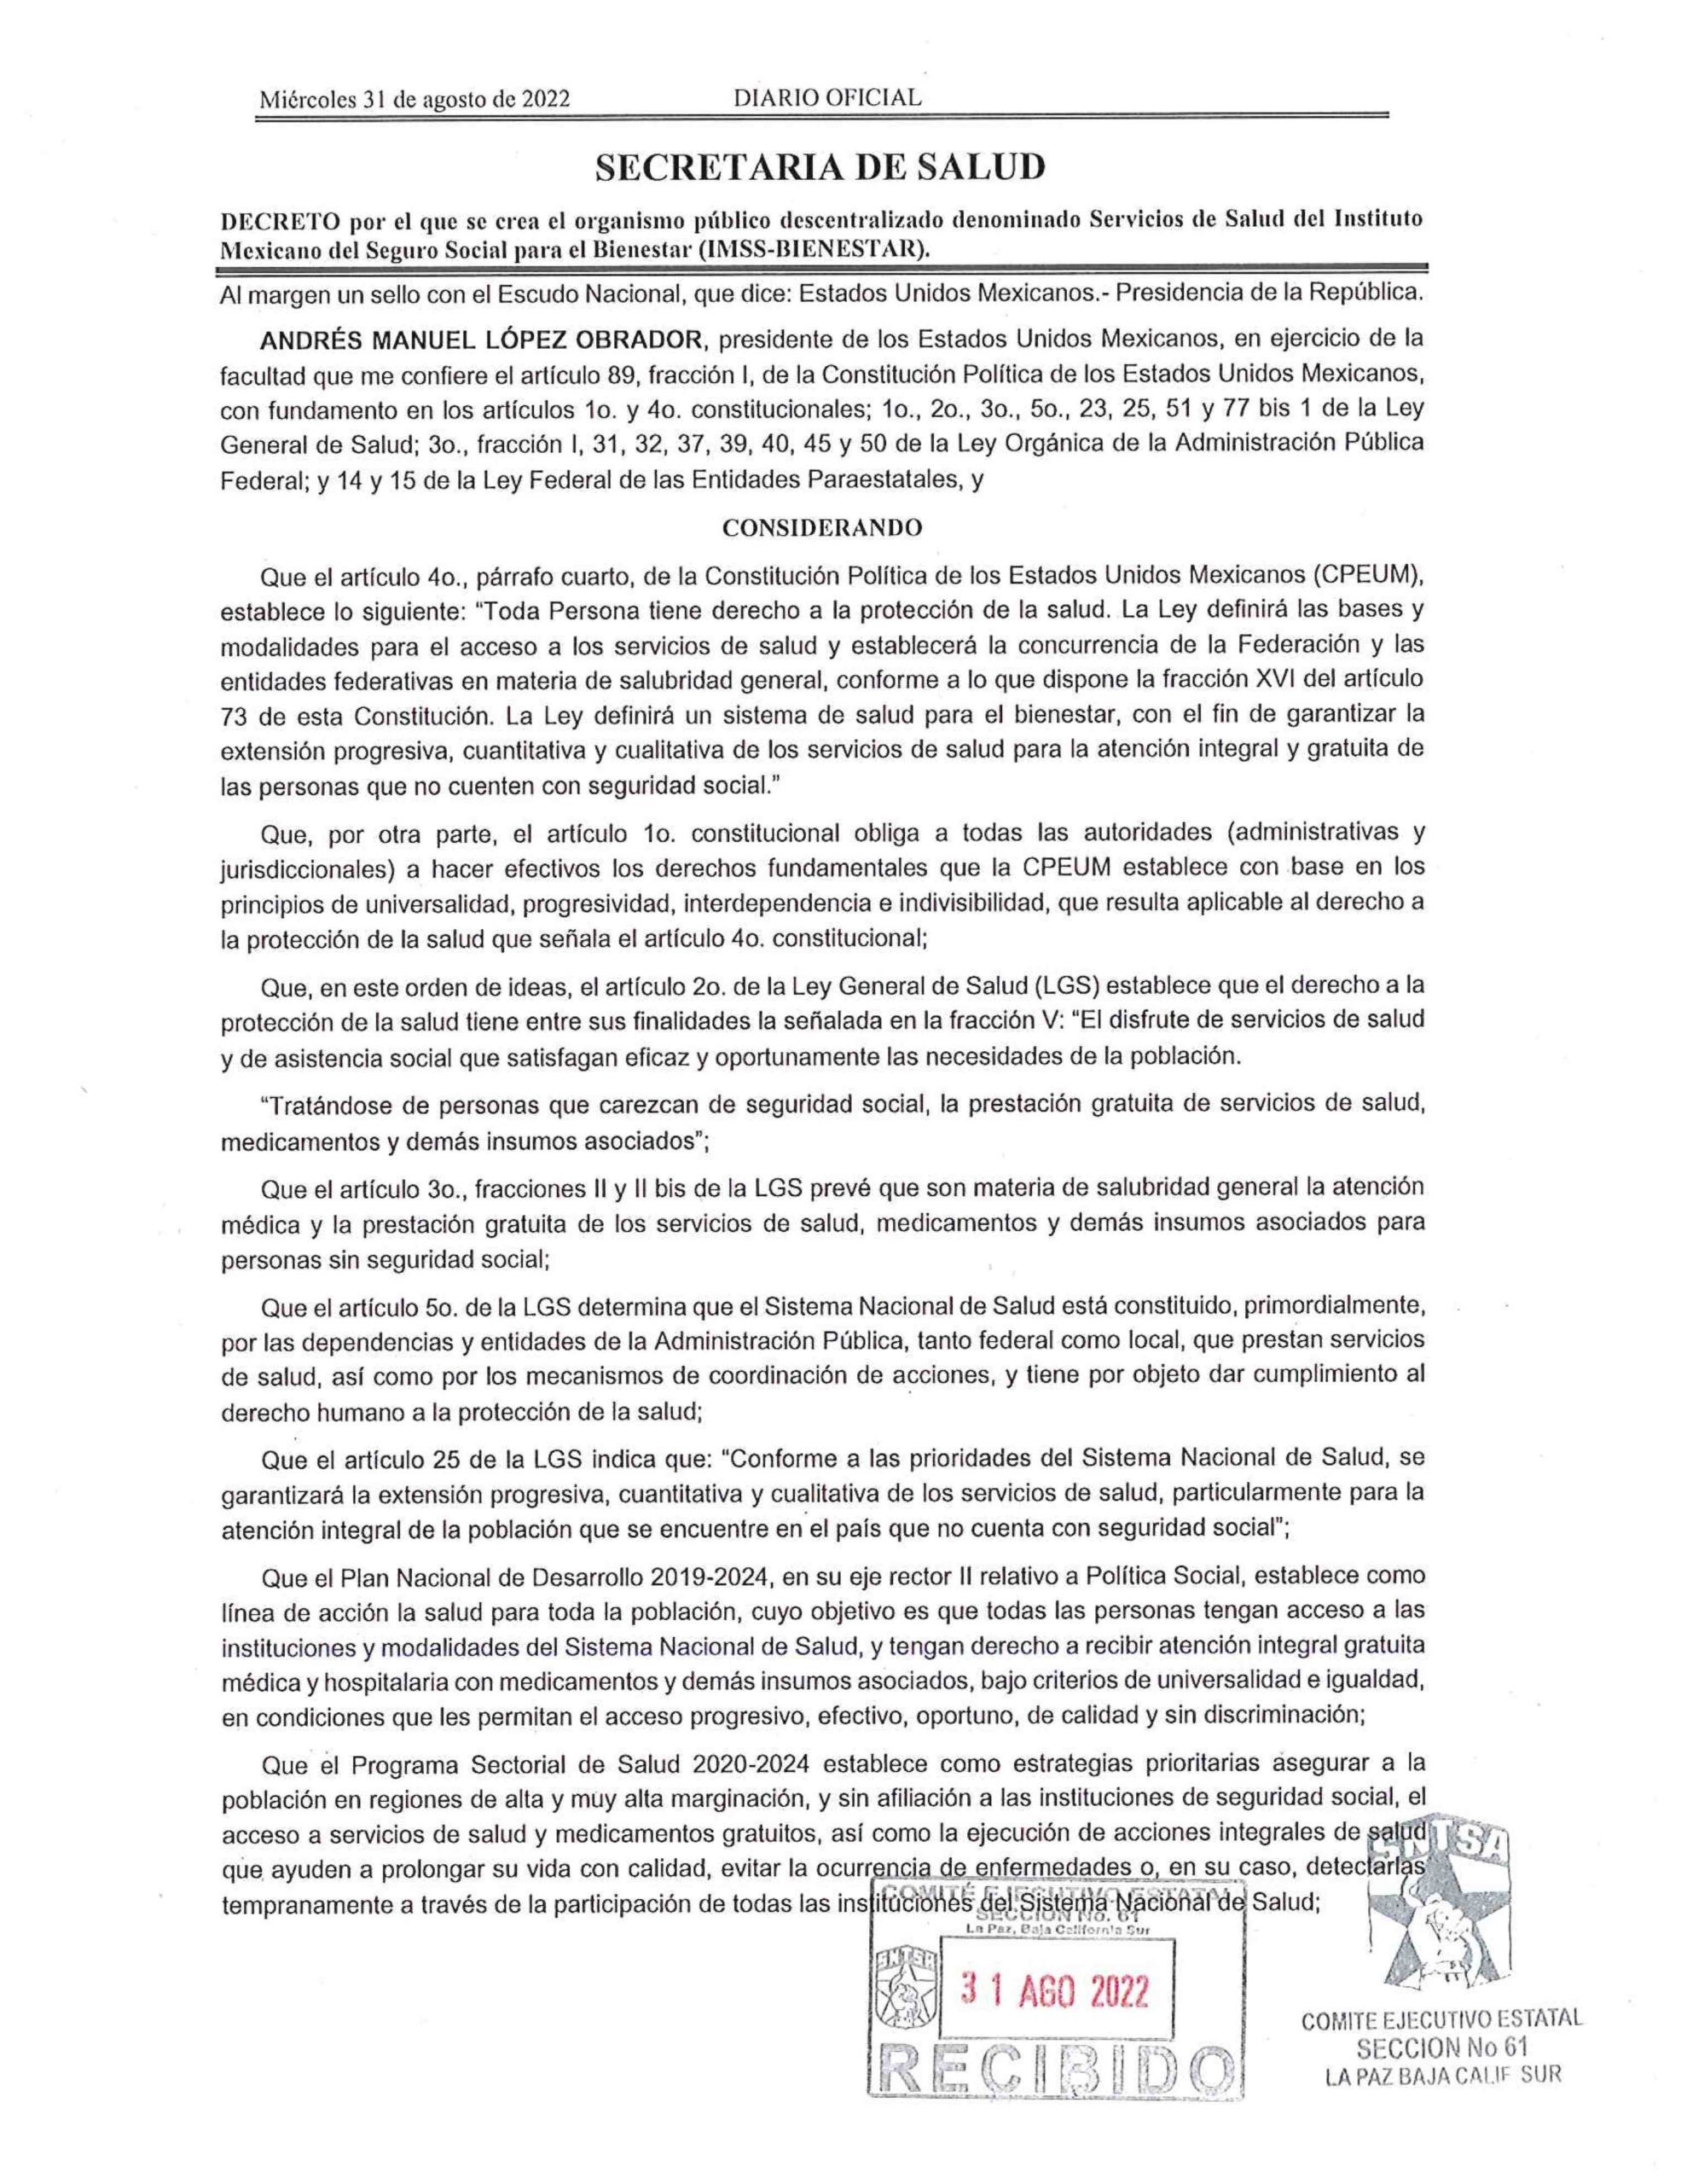 Decreto por el que se crea el Organismo Público Descentralizado denominado Servicios de Salud del Instituto Mexicano del Seguro Social para el Bienestar (IMSS – BIENESTAR).